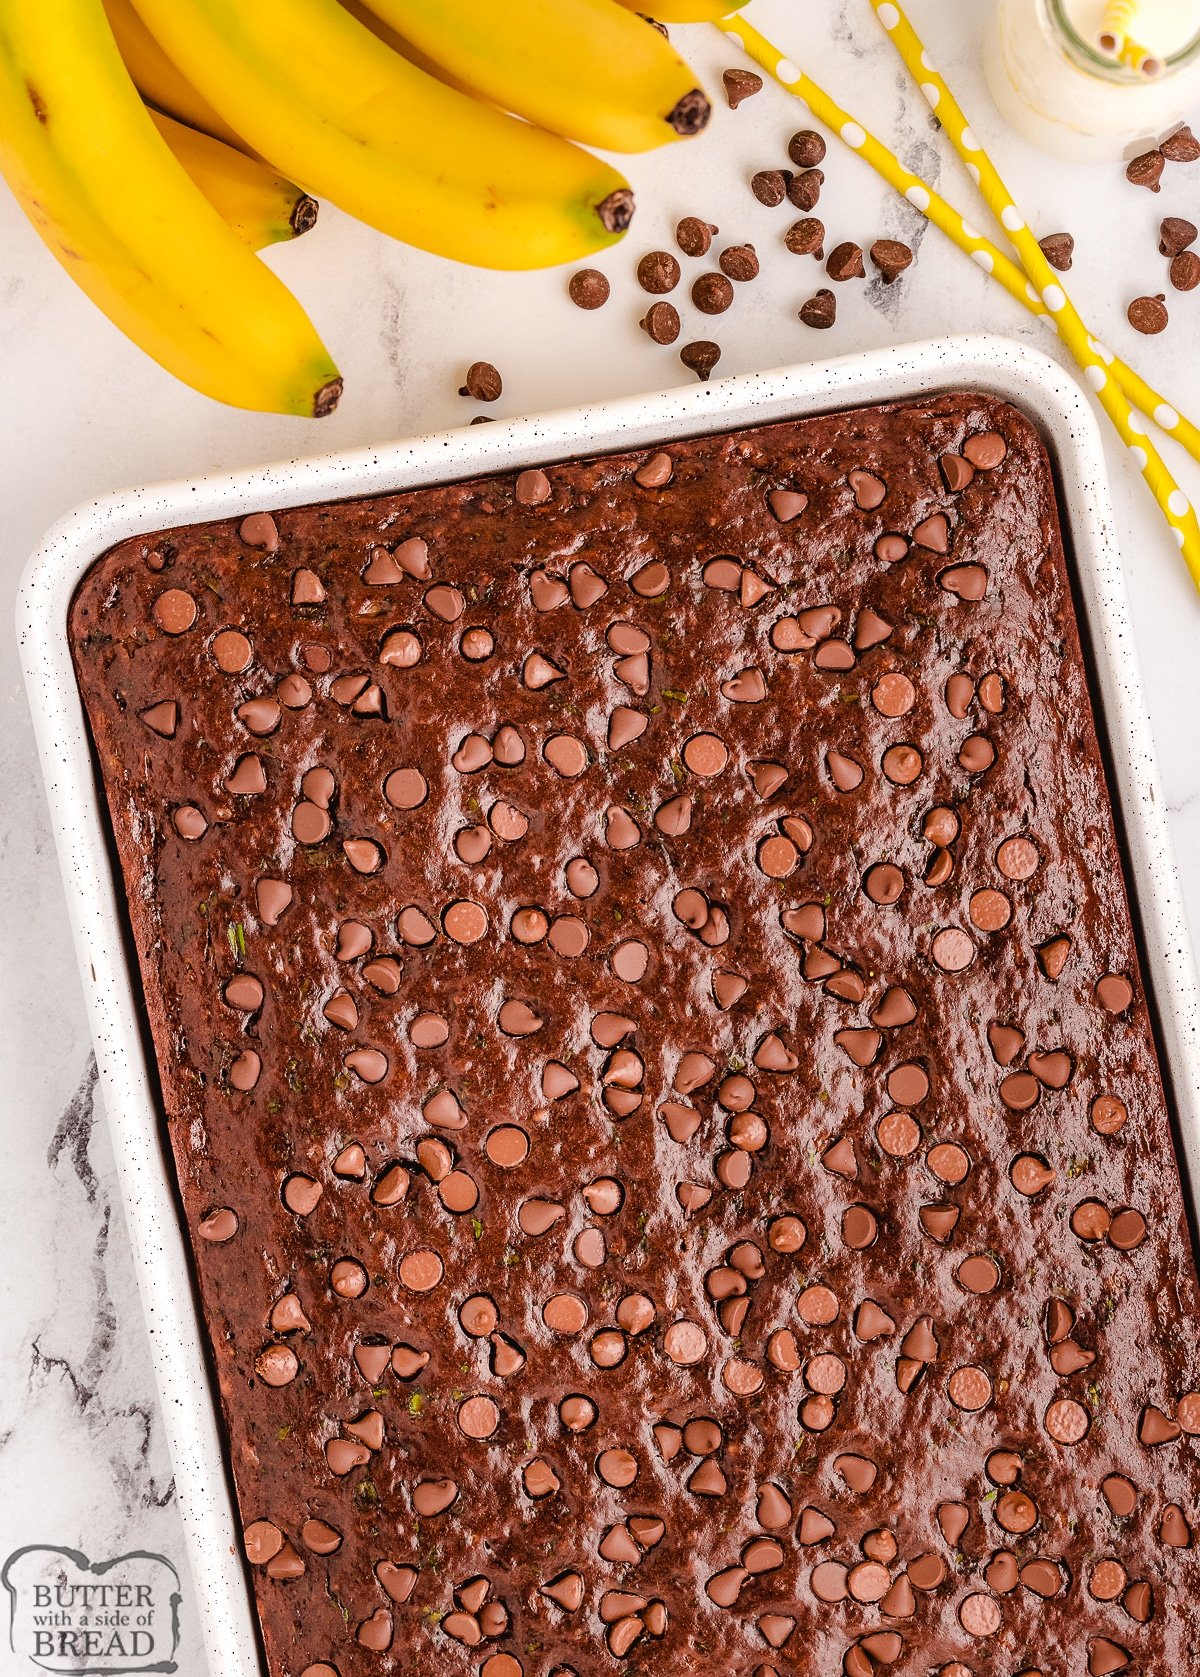 pan of chocolate banana bars